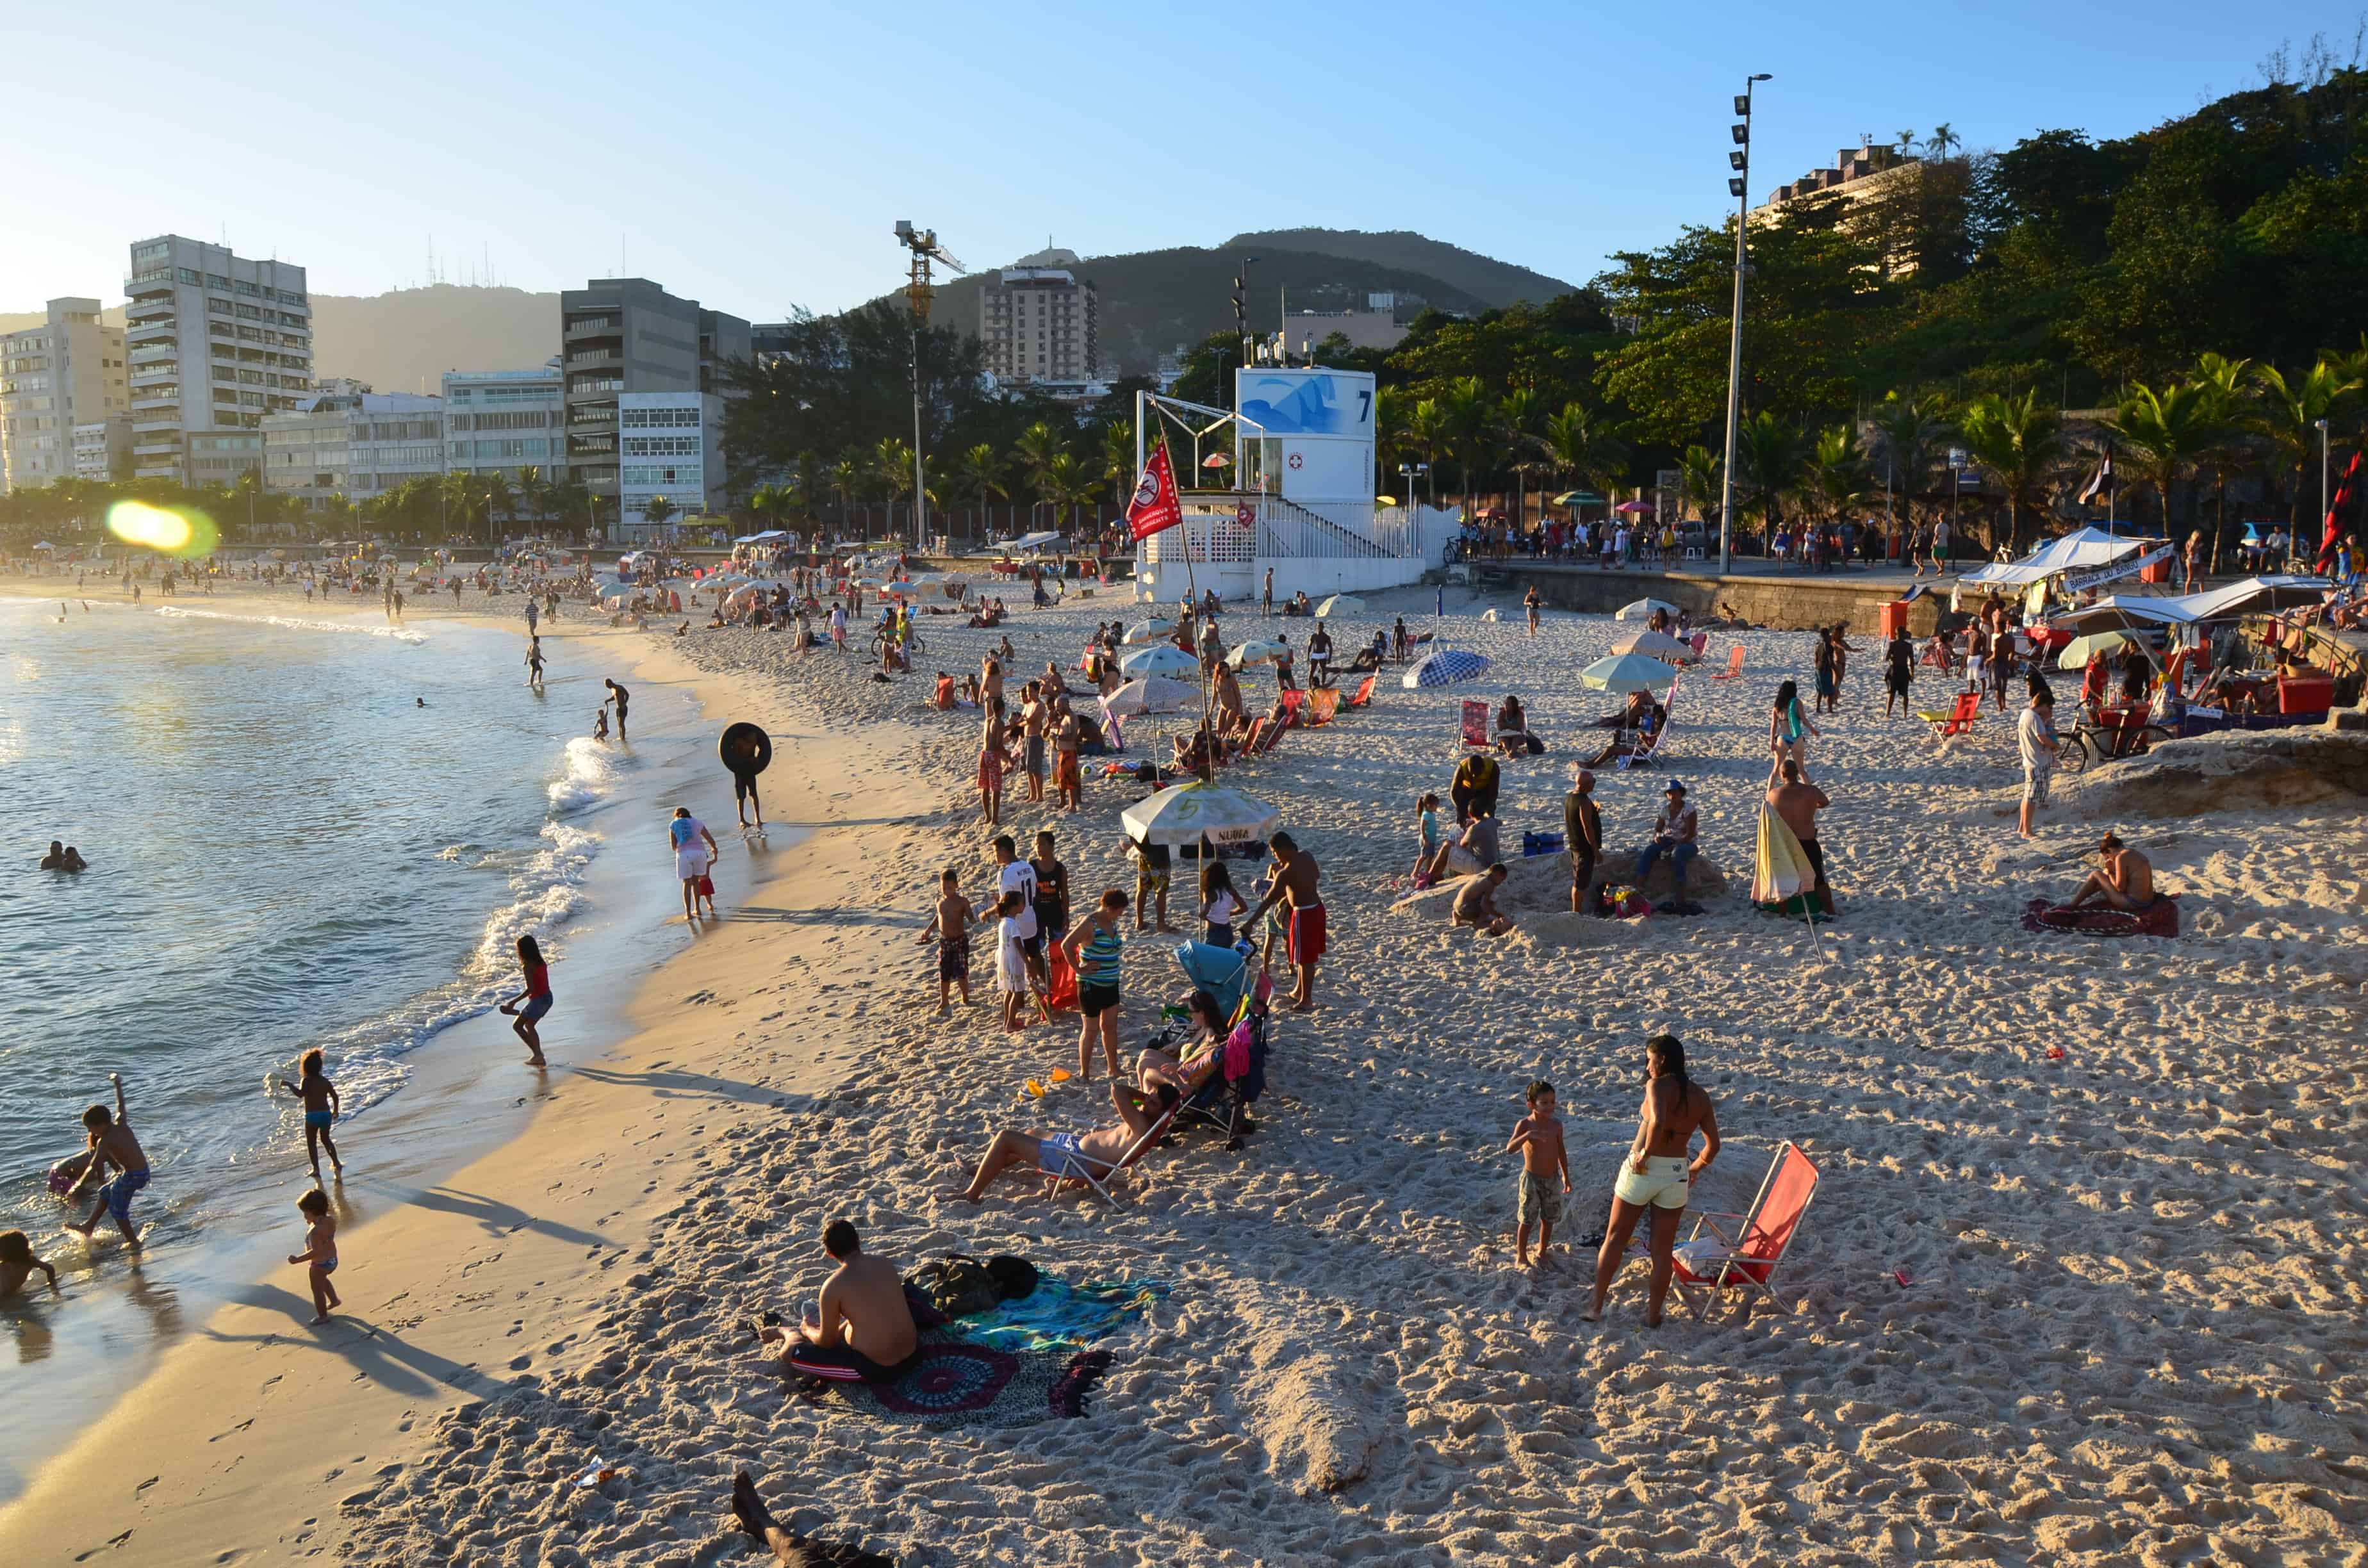 Arpoador in Rio de Janeiro, Brazil